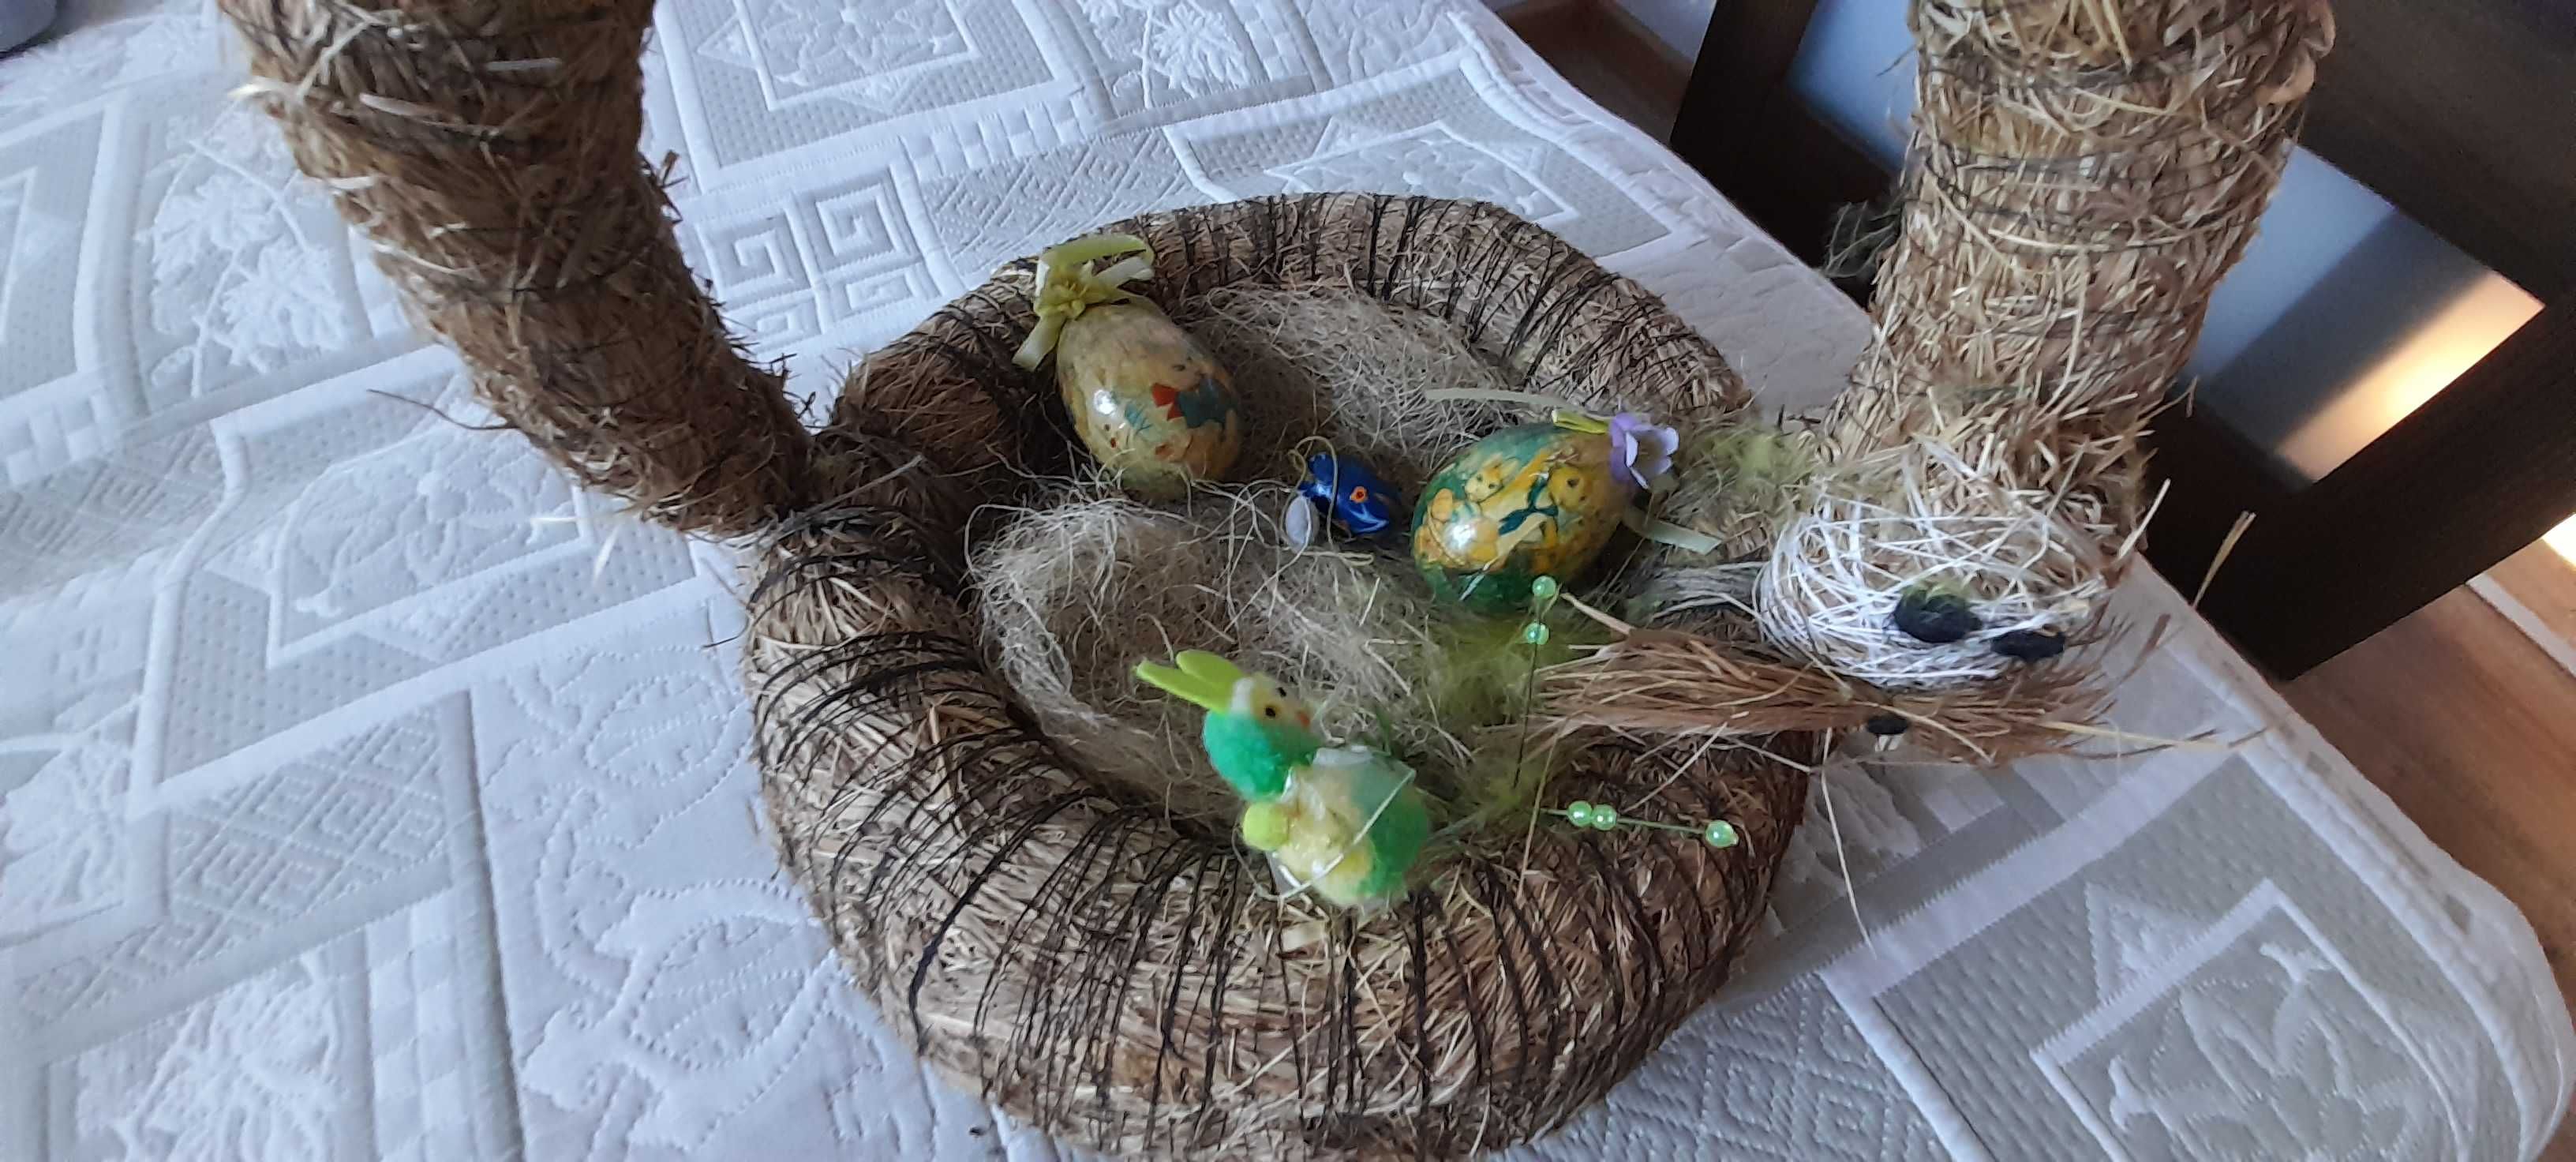 Koszyczek wielkanocny pleciony  ze siana z jajami i ozdobami